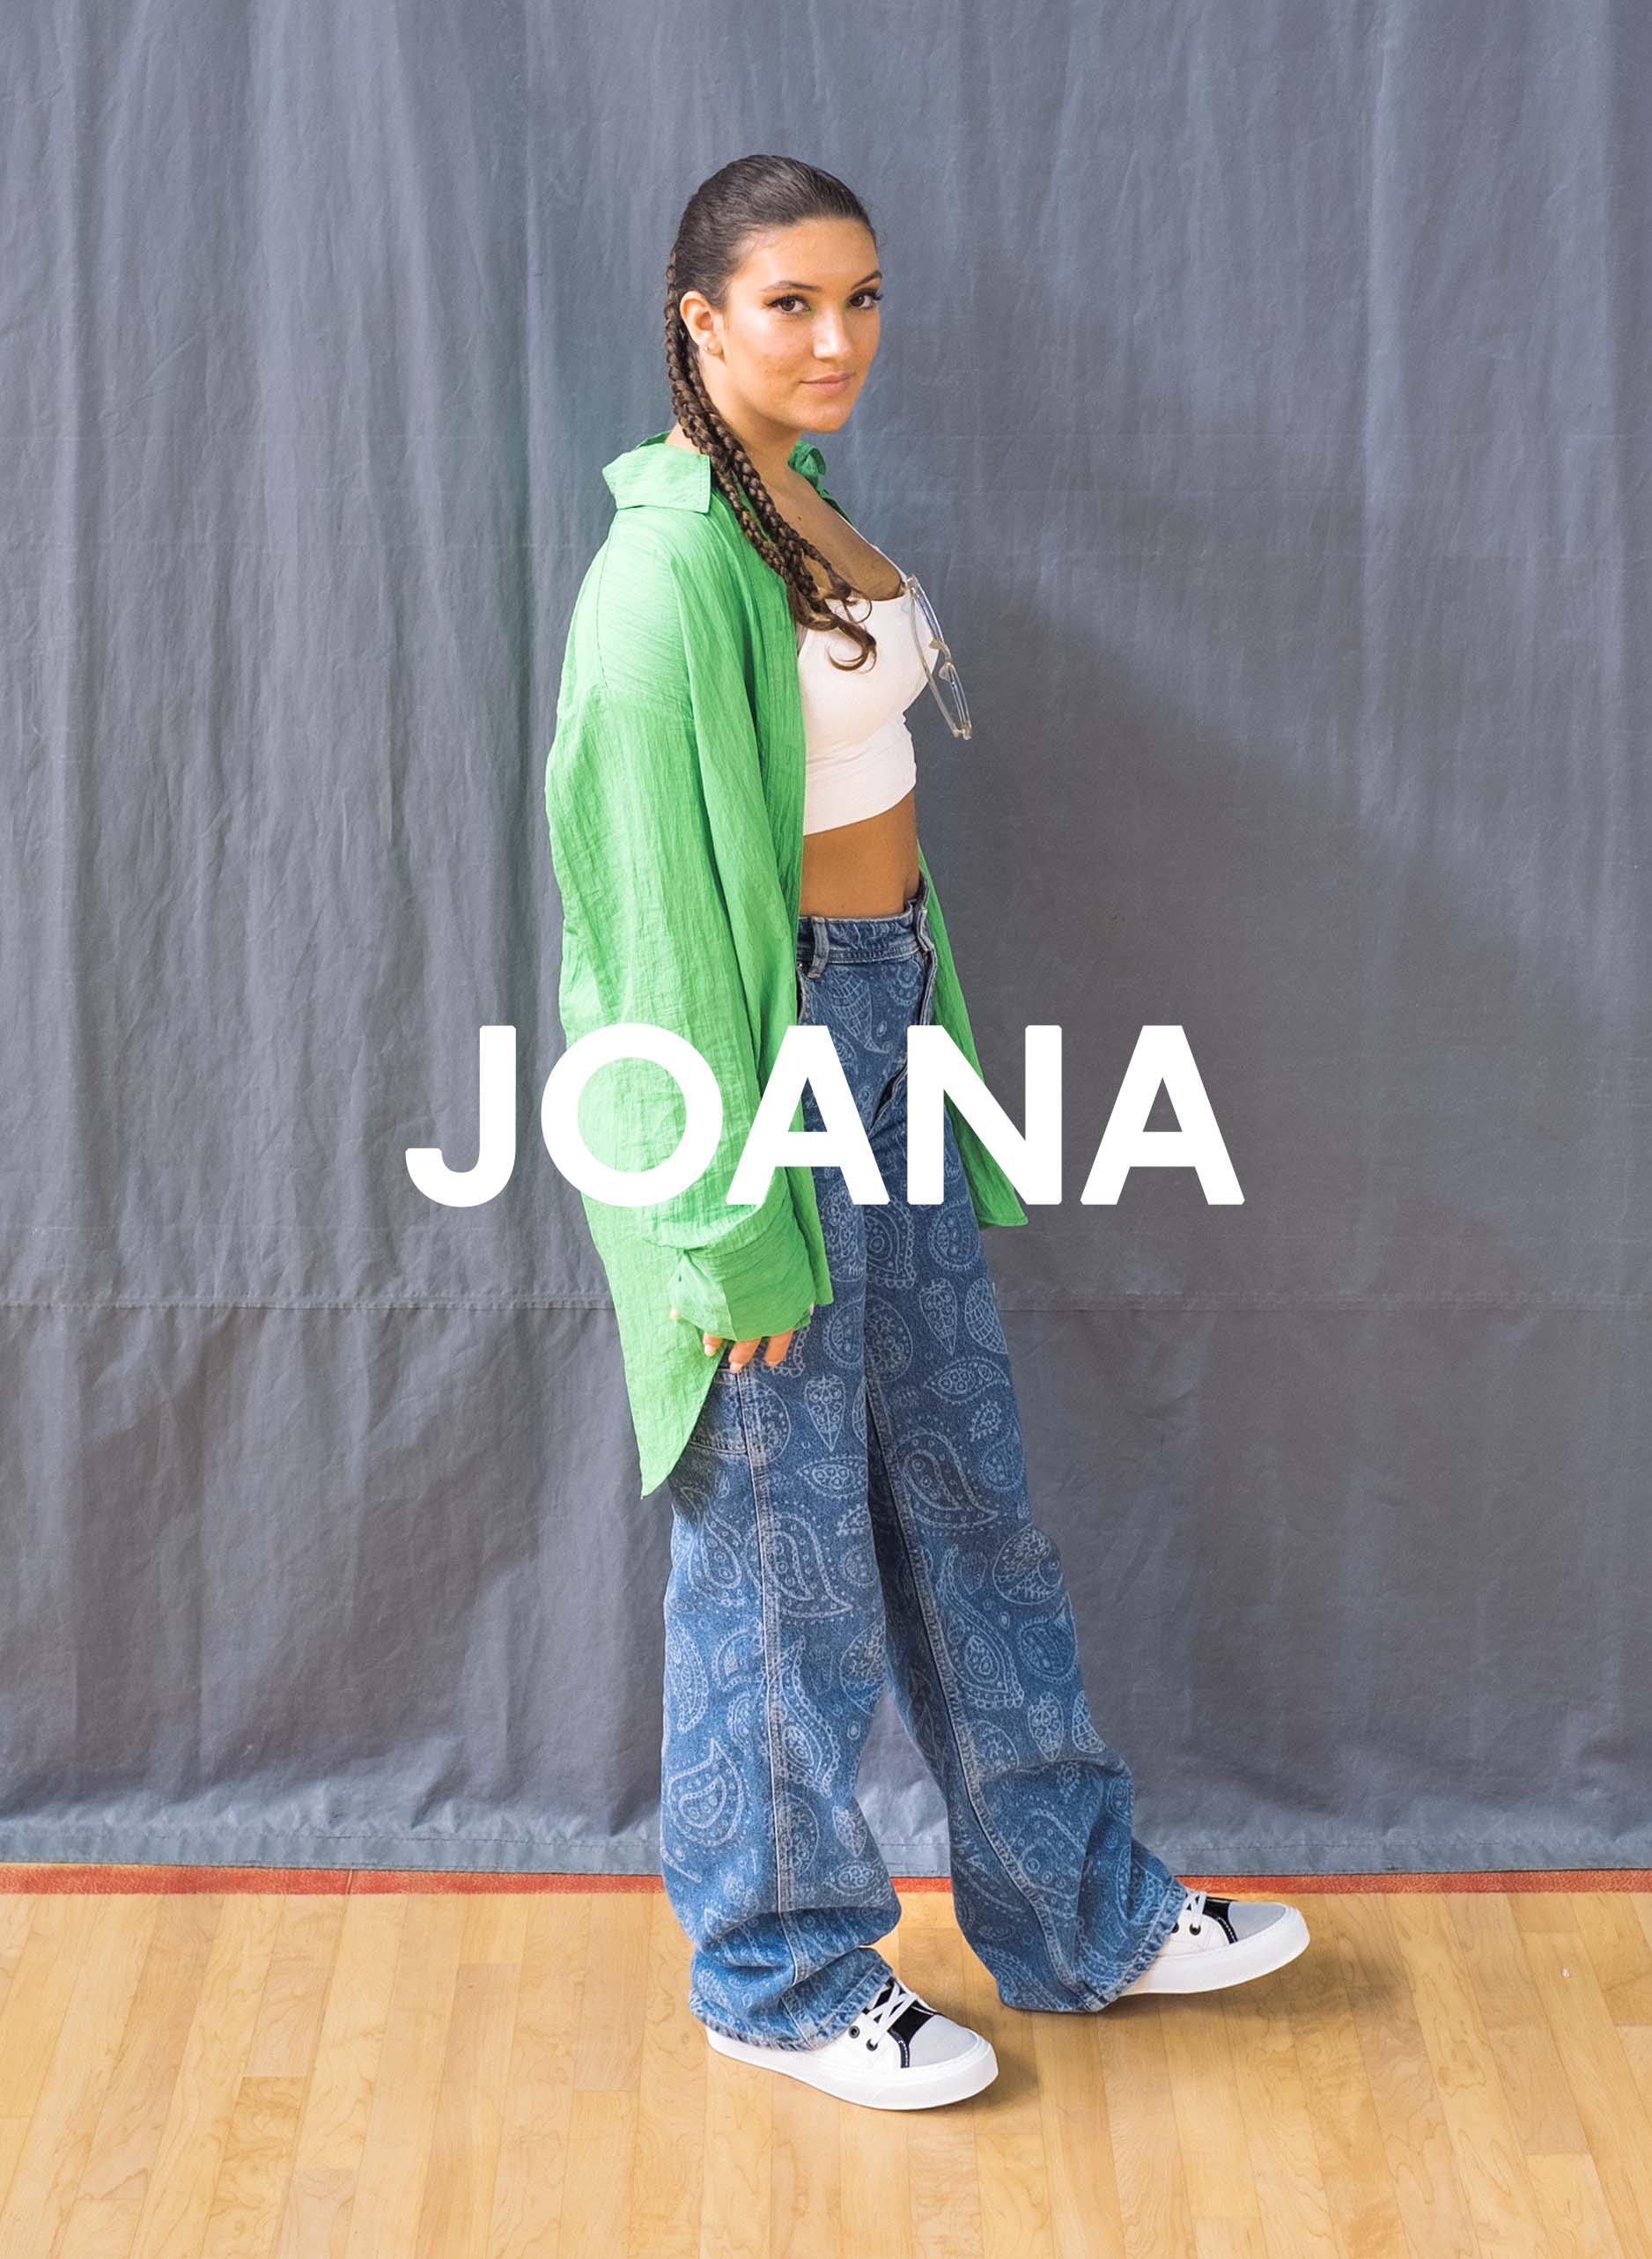 Joana in camicia verde e jeans in piedi su un pavimento di legno, indossando Diverge sneakers, promuovendo l'impatto sociale e le scarpe personalizzate attraverso il progetto Imagine.  